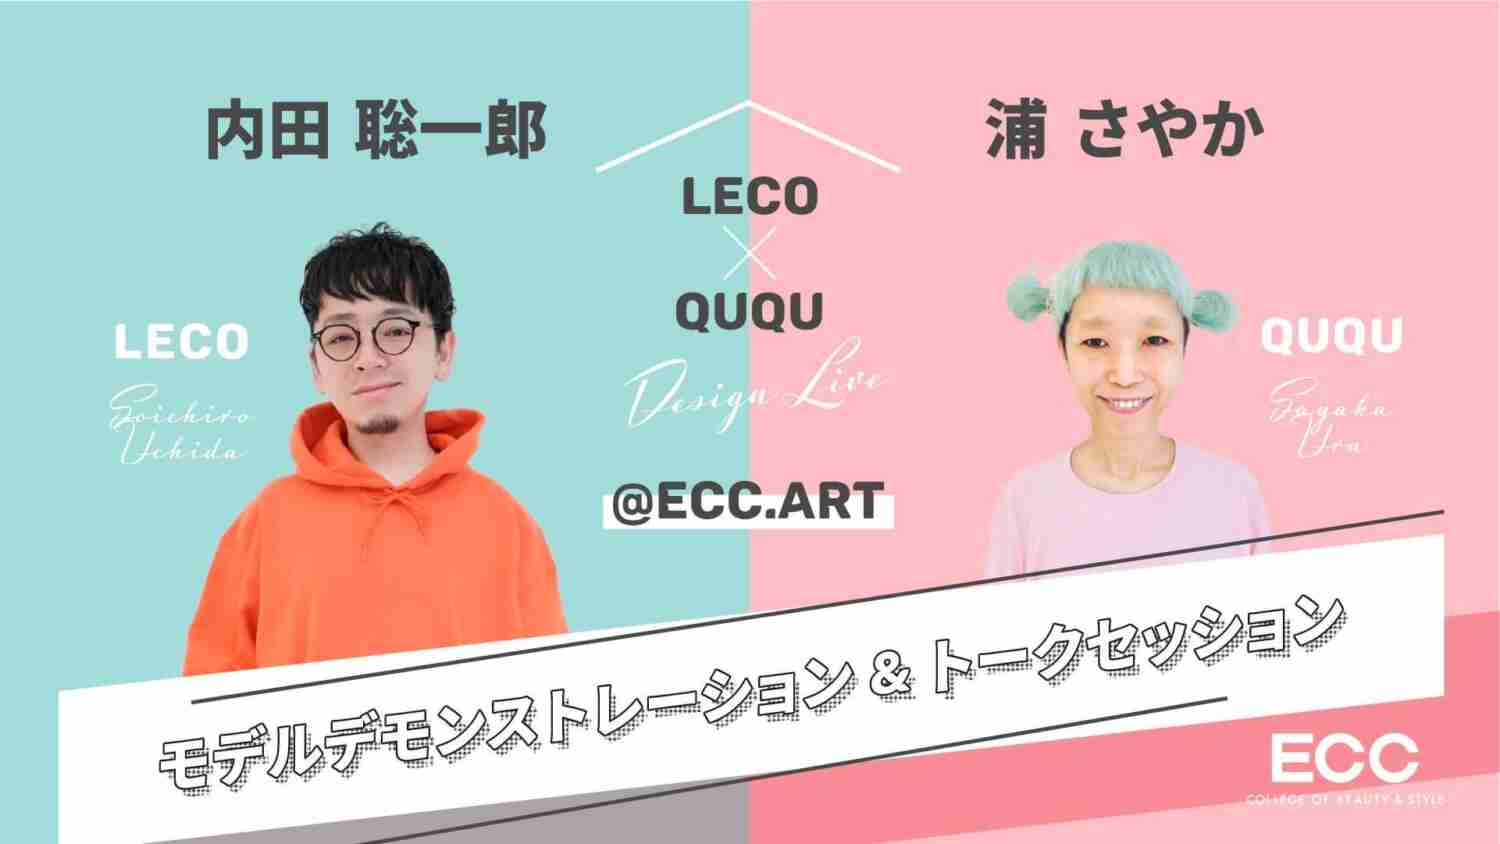 LECO×QUQU Design Live @ECC.art